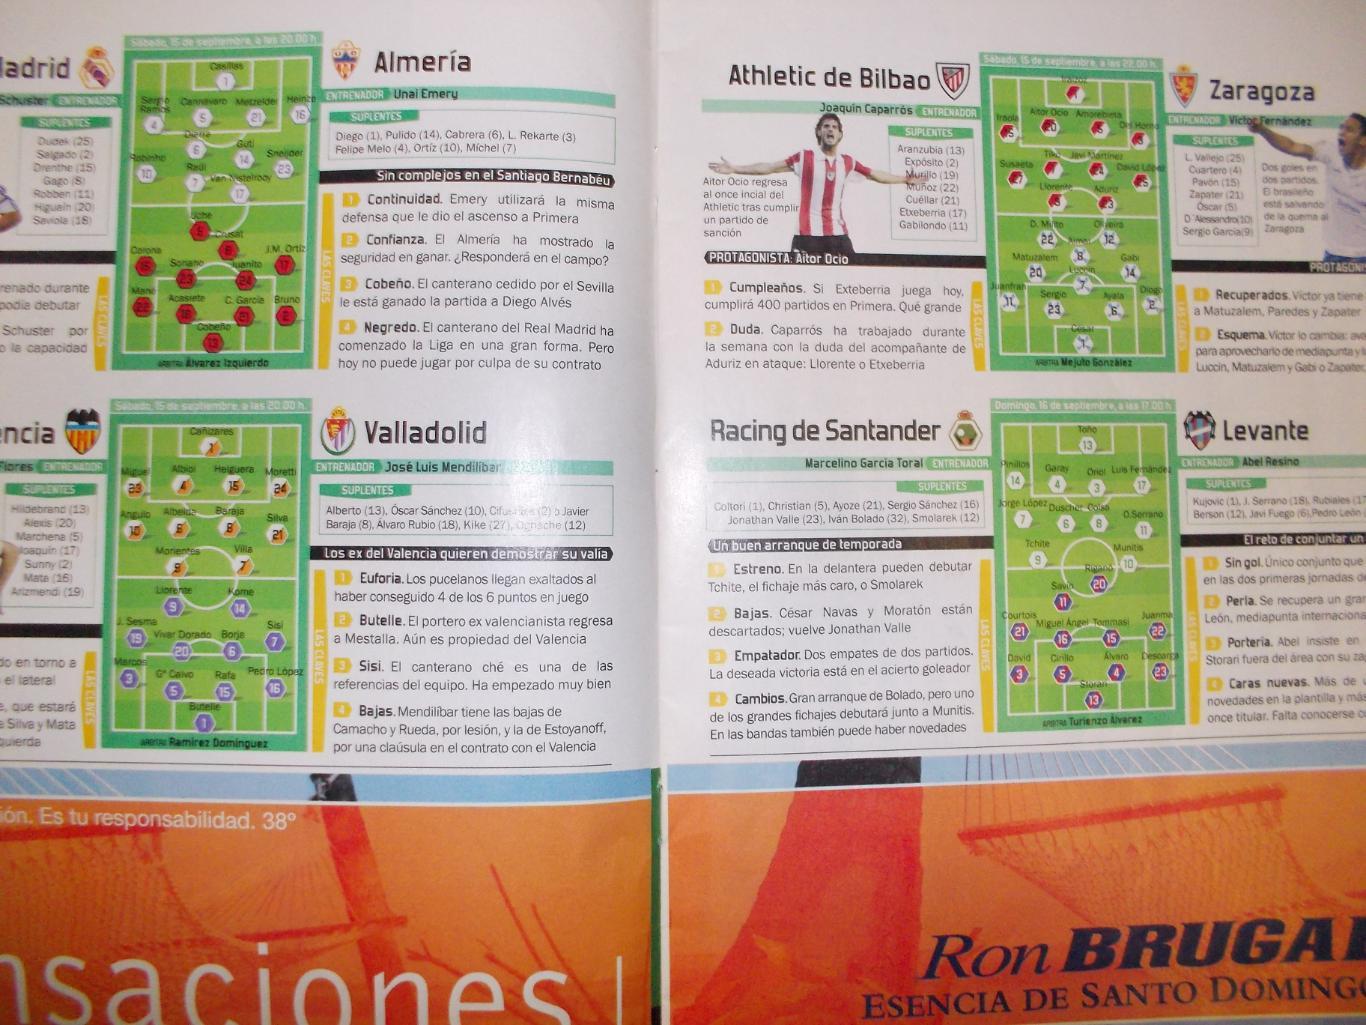 Футбольный журнал Испания. Сентябрь 2007 год. Ла Лига. 2